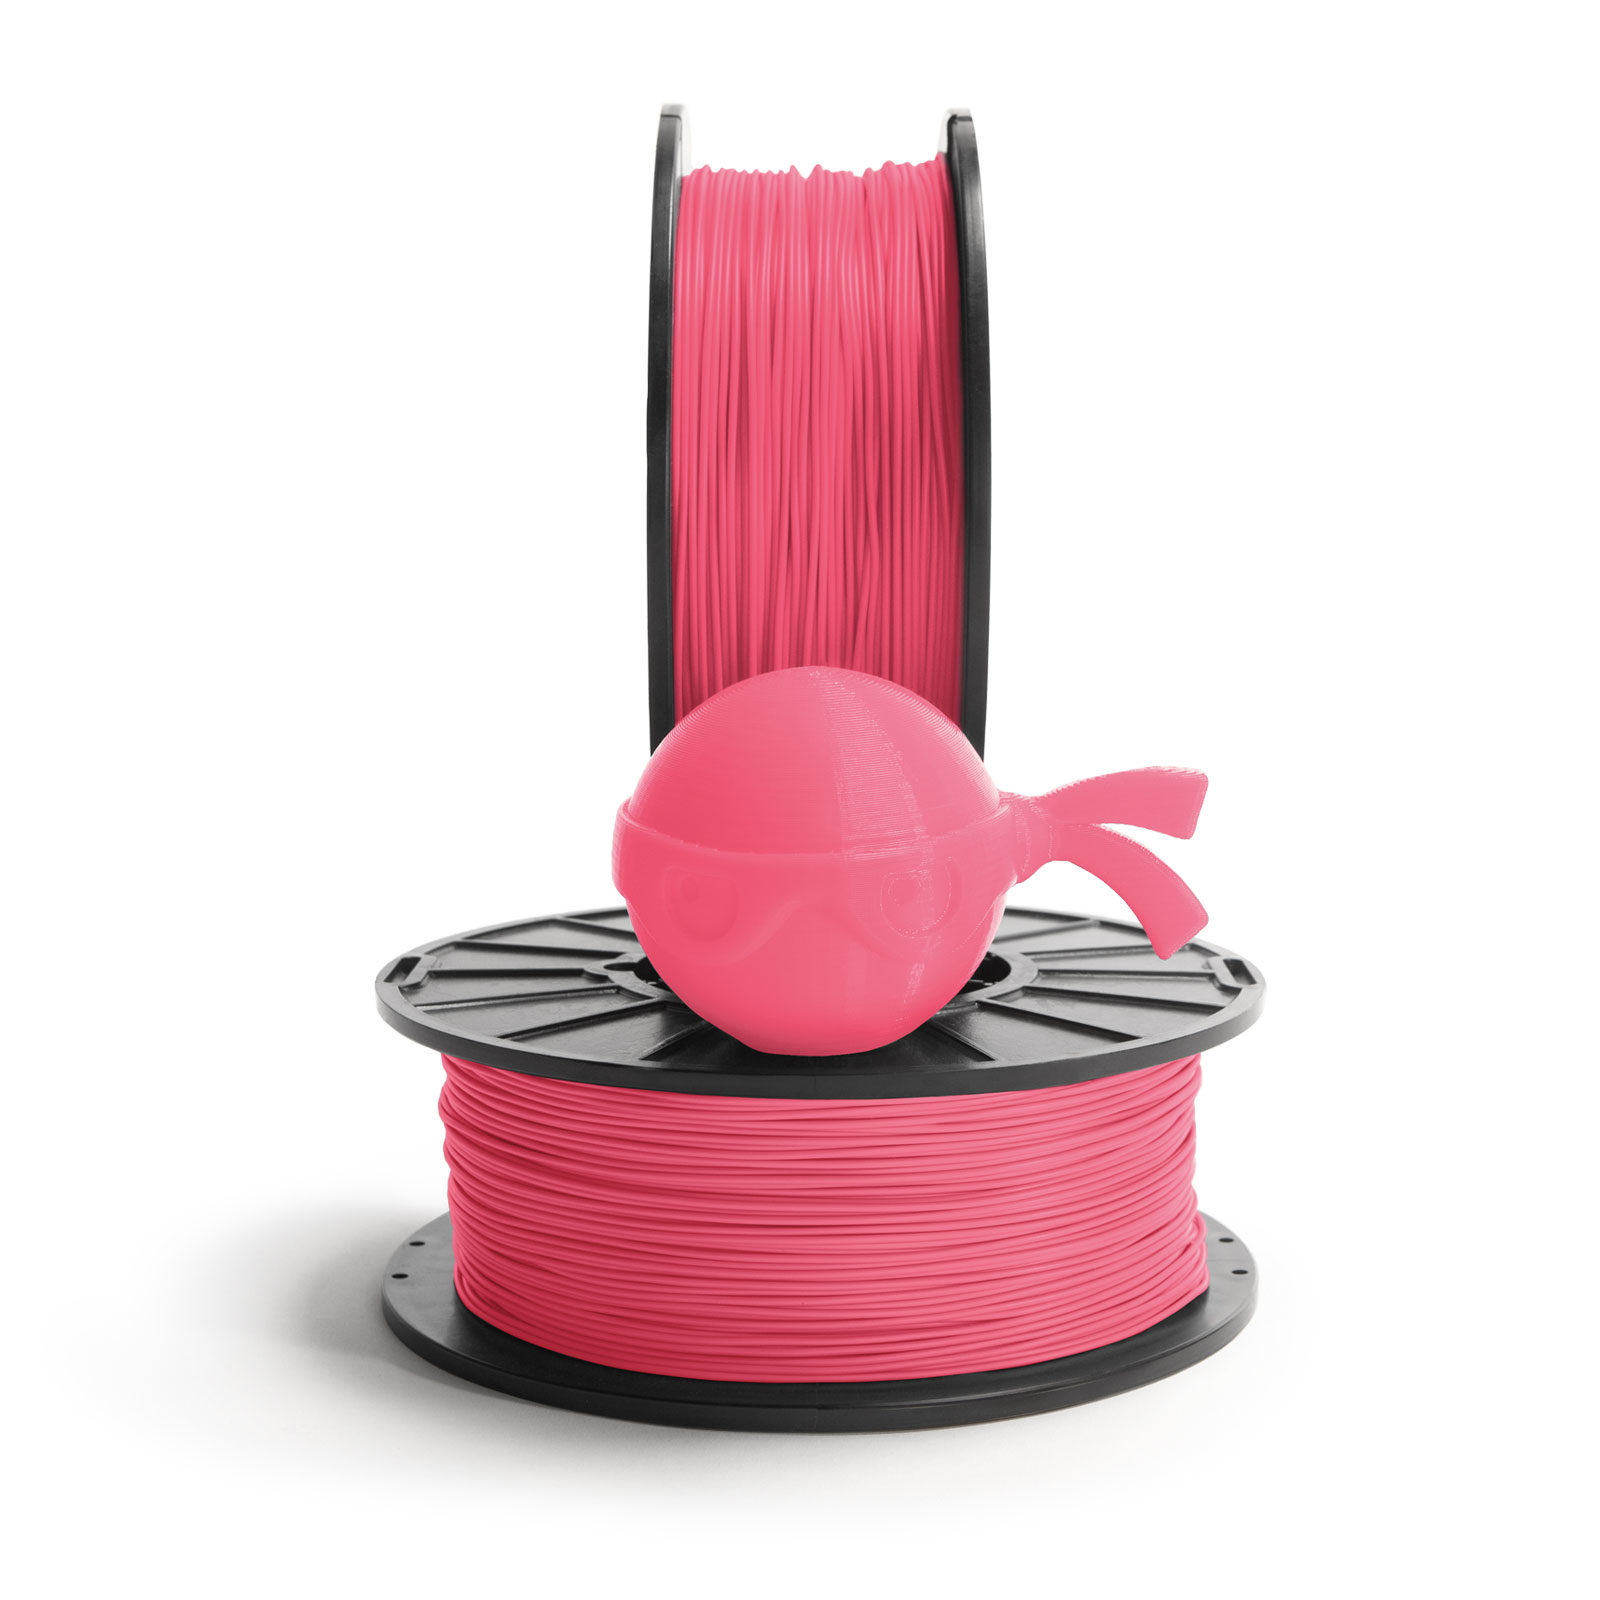 Armadillo Flamingo Pink 75D Rigid TPU 3D printing filament 3mm 500gms